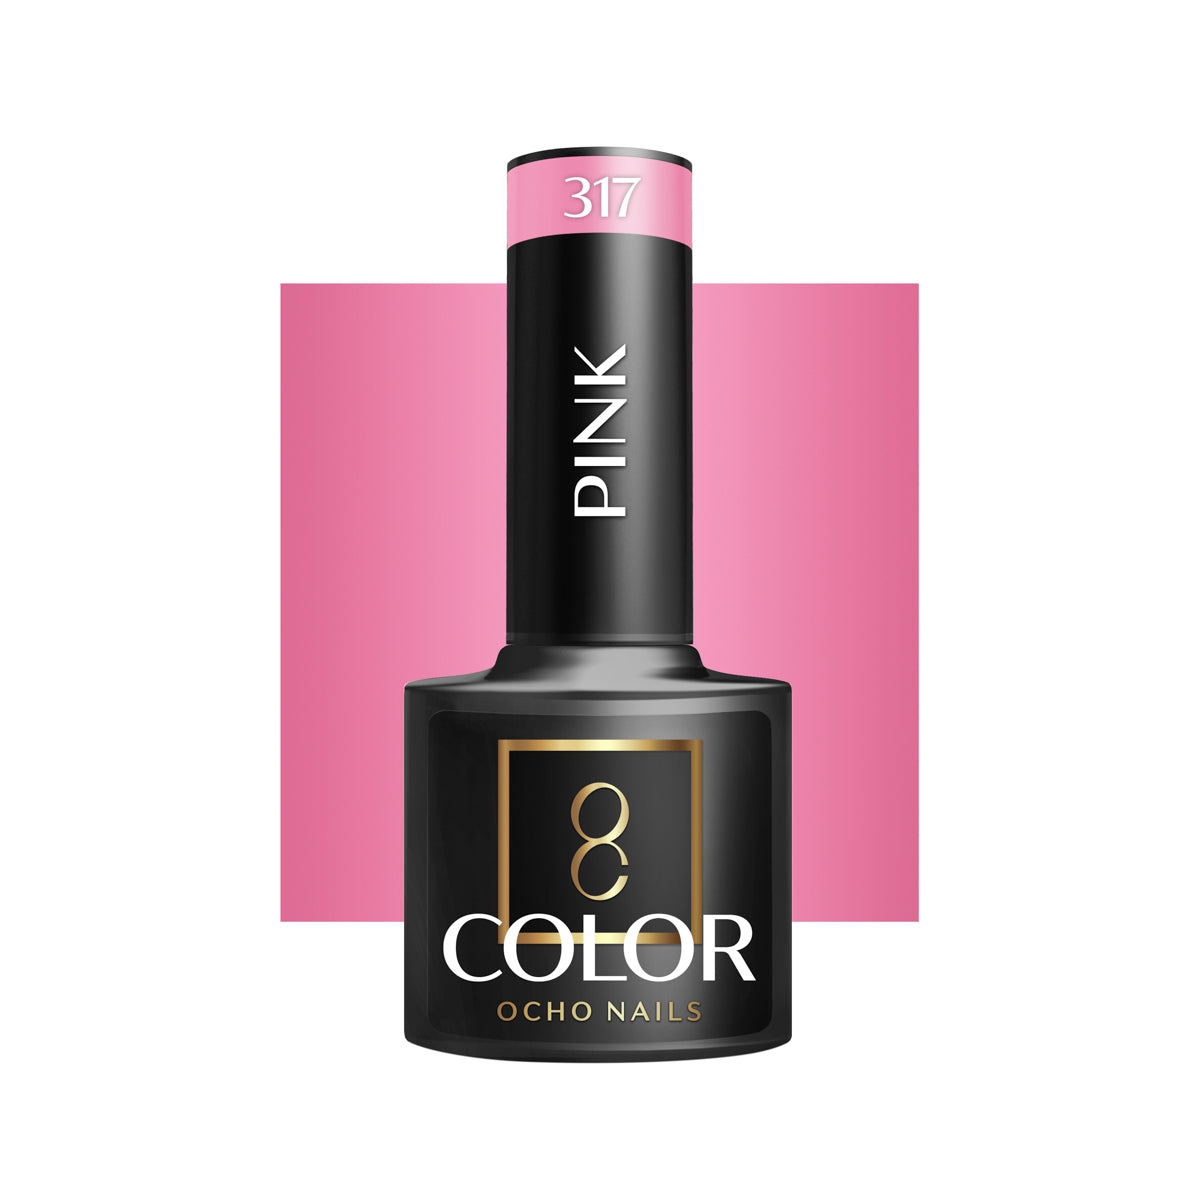 OCHO NAILS Hybride nagellak roze 317 -5 g